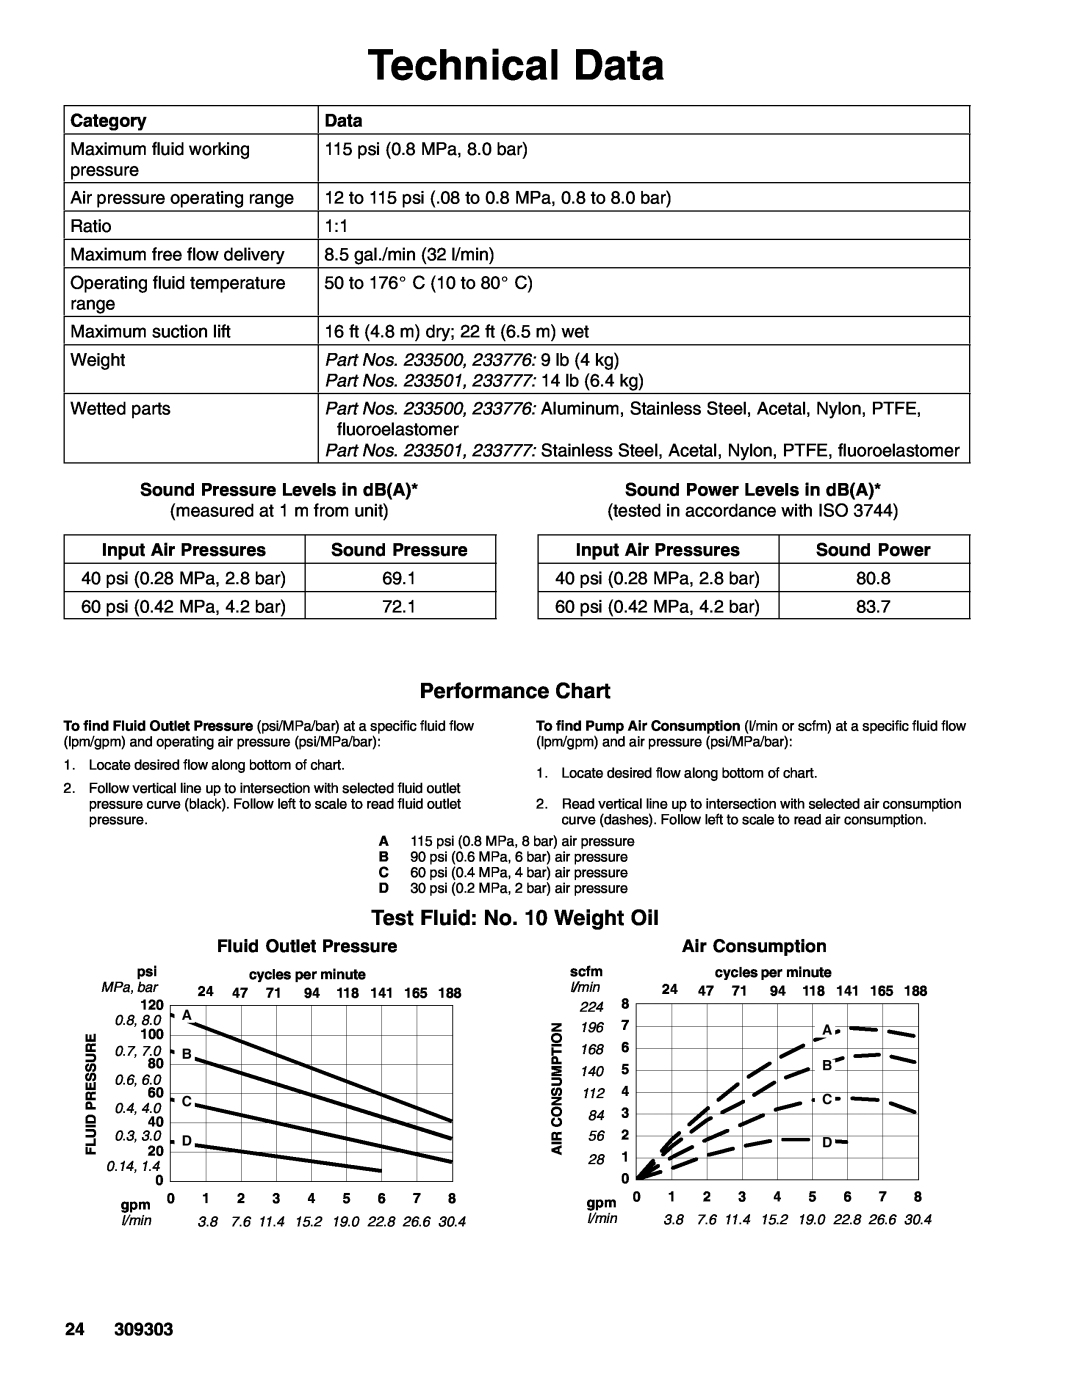 Graco Technical Data, Category, Part Nos. 233500, 233776 9 lb 4 kg, Part Nos. 233501, 233777 14 lb 6.4 kg, Sound Power 